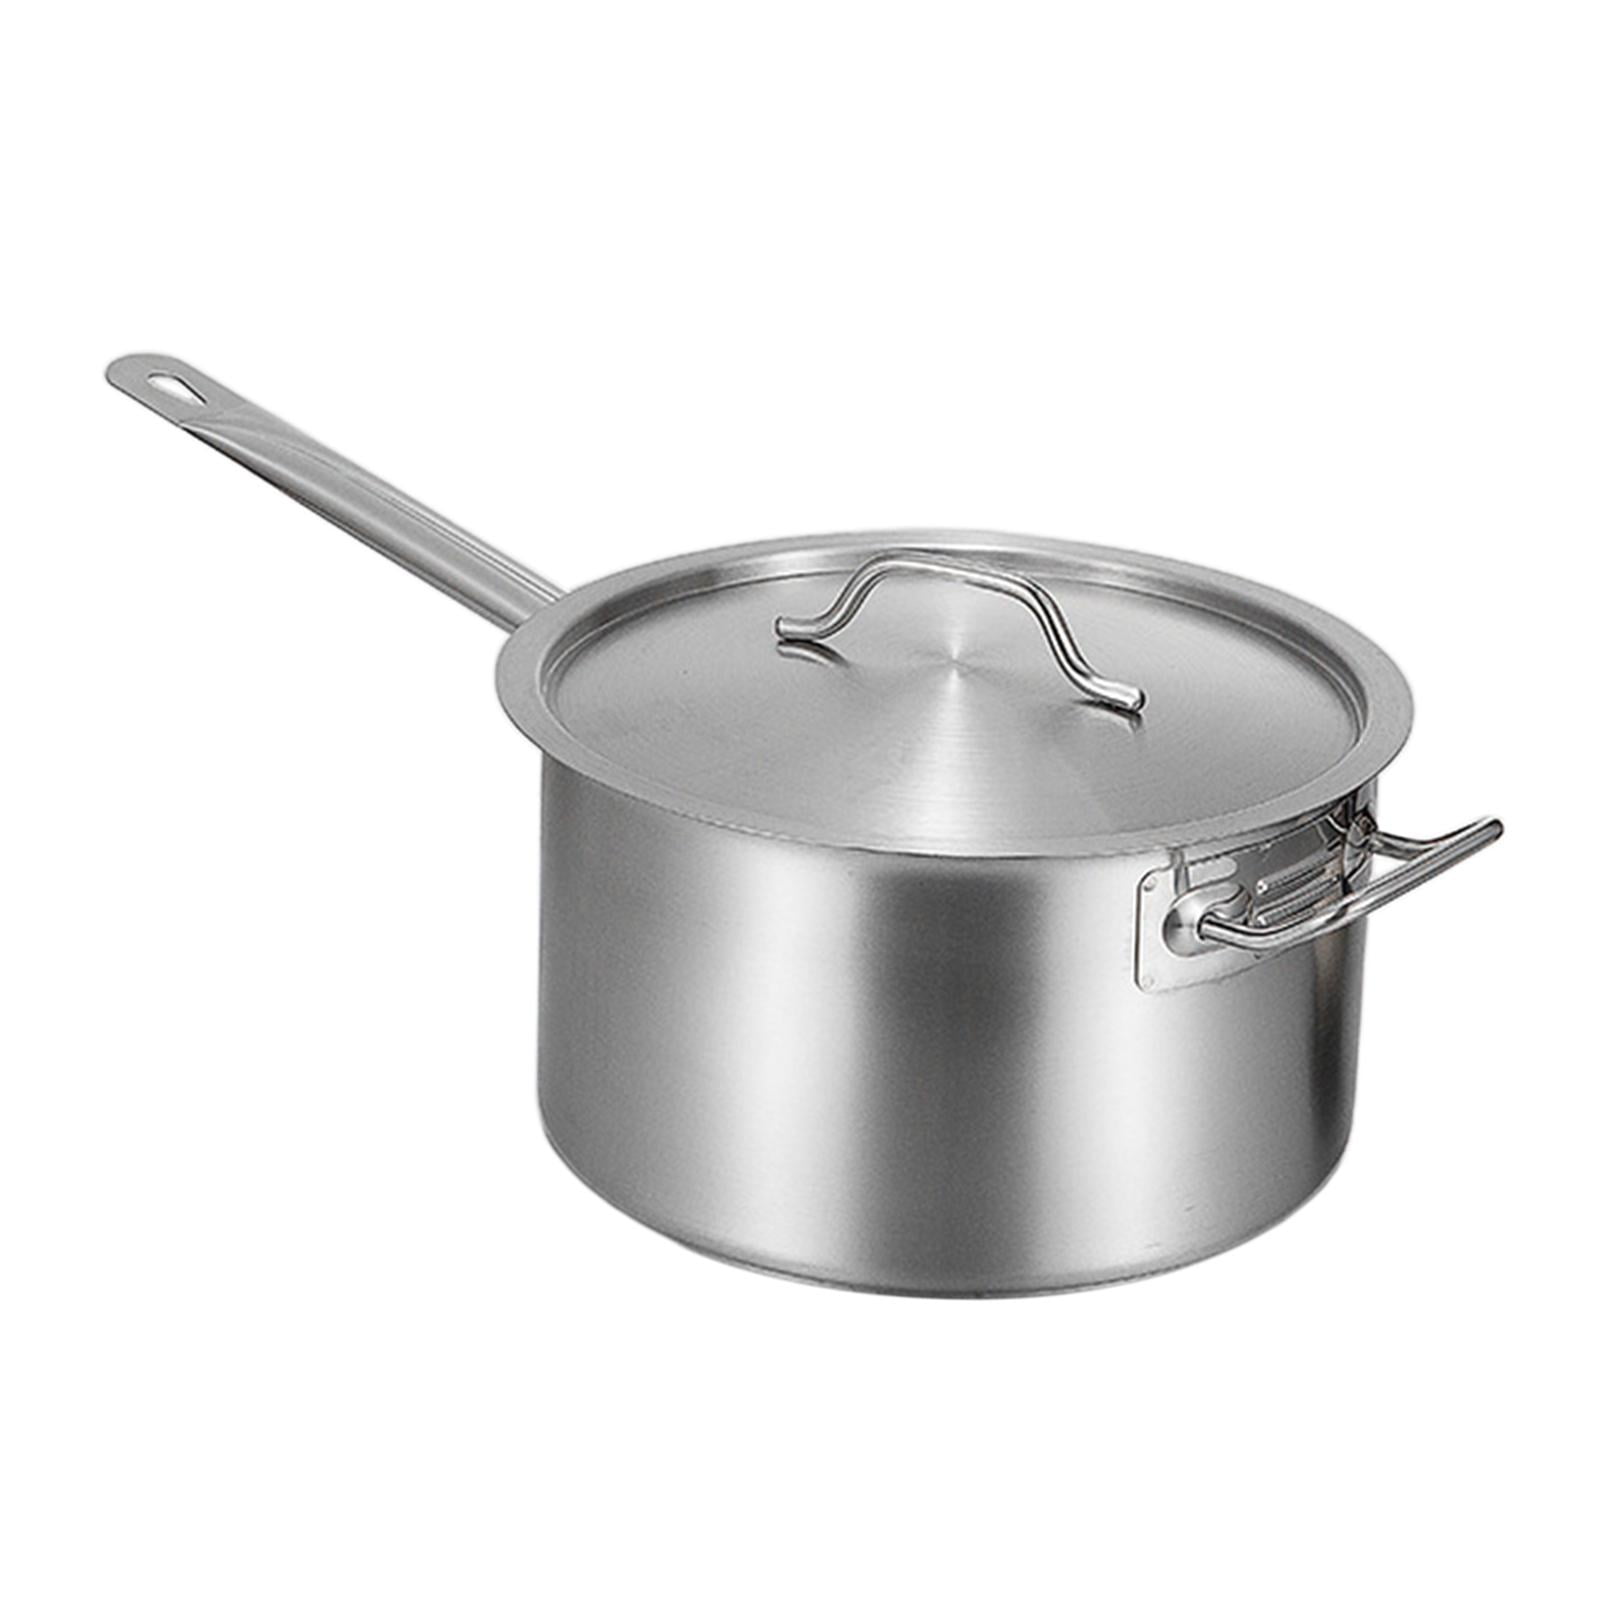 KANGXW 316L Stainless Steel Saucepans, 1.0 Quart Pan, with Pour Spout and Filter Glass Lid, Boiling Milk Pots, Sauce, Gravy, Pasta Stock Noodles Pot